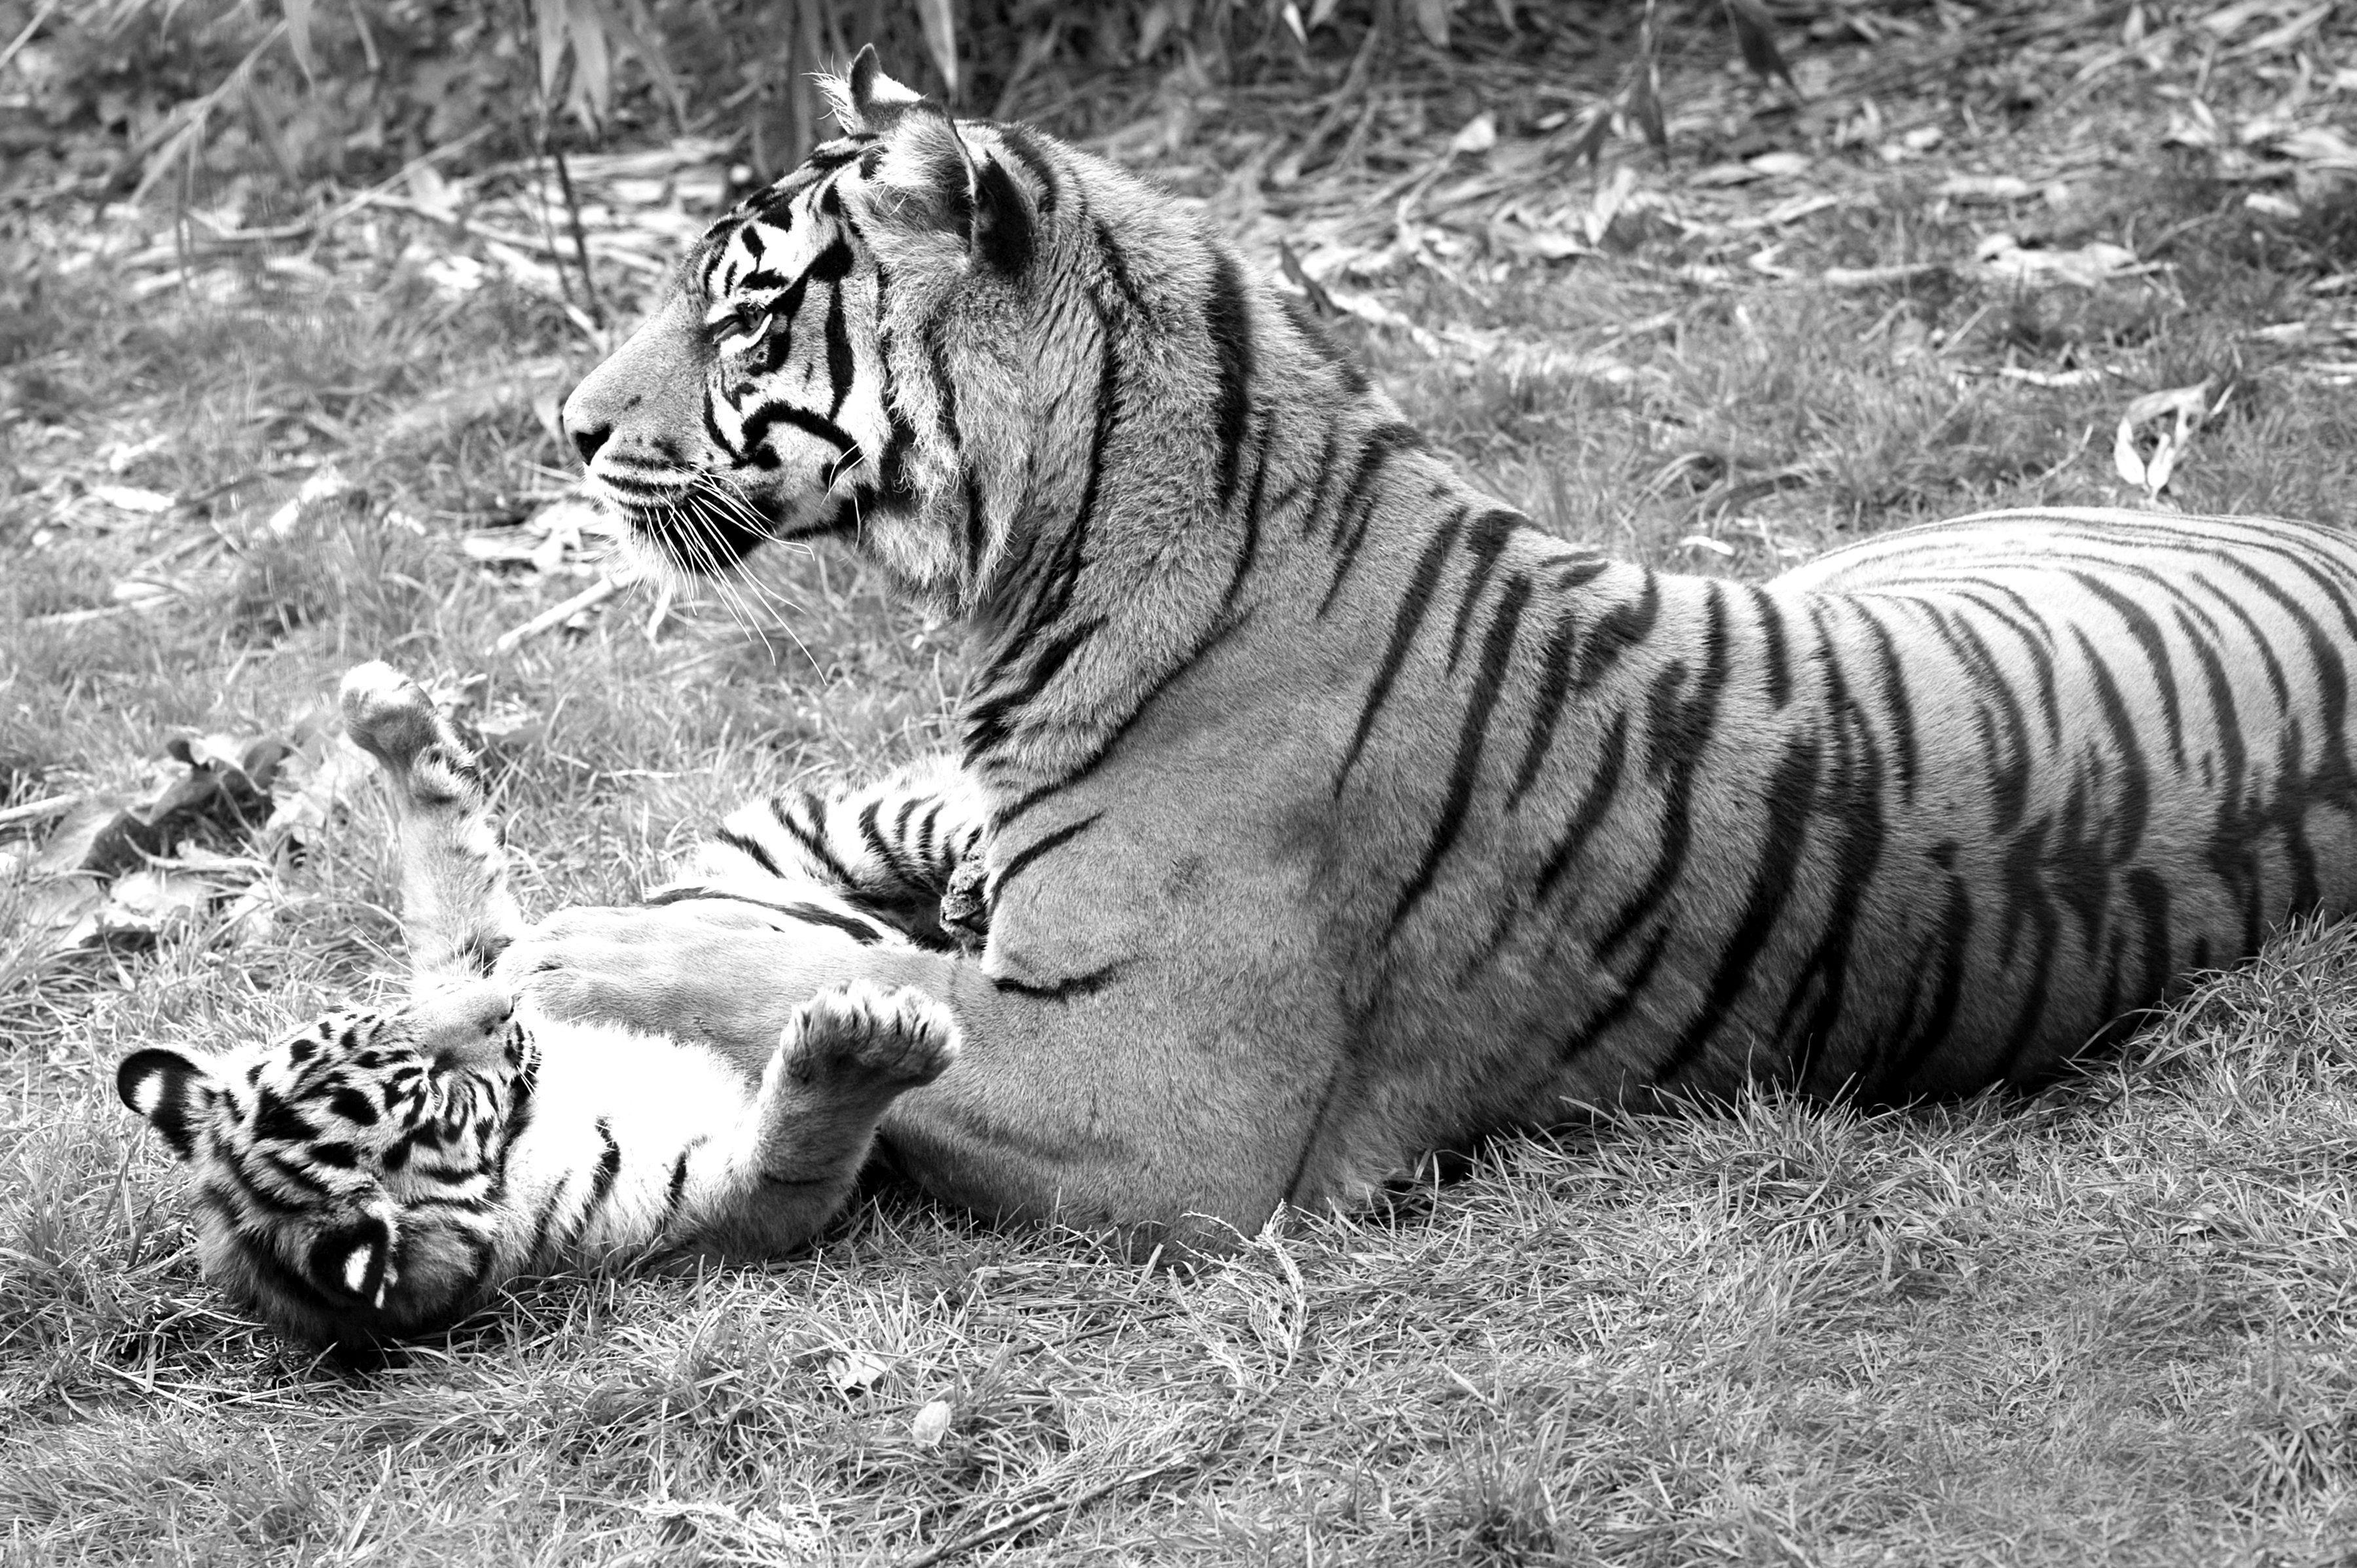 Papermoon Fototapete Tiger Schwarz & Weiß